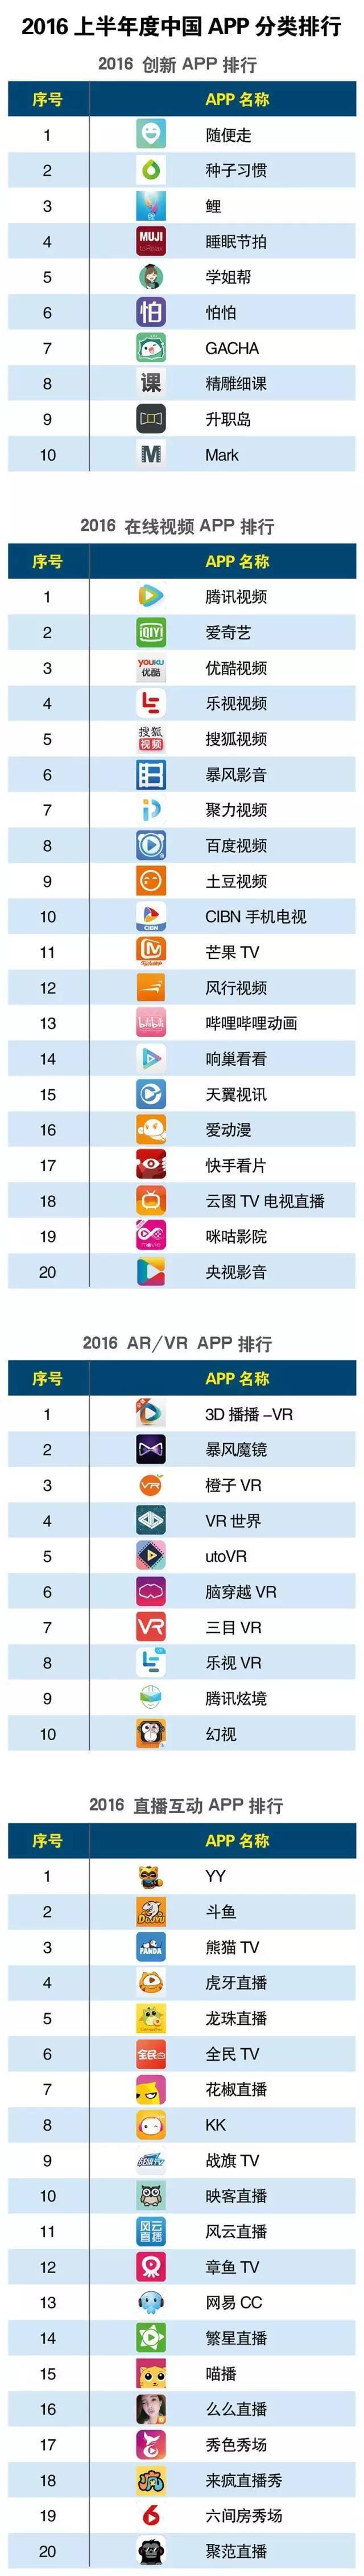 中国app分类排行_互联网周刊2021上年半App分类排行:腾讯视频、妈妈网、携程领跑行...(2)